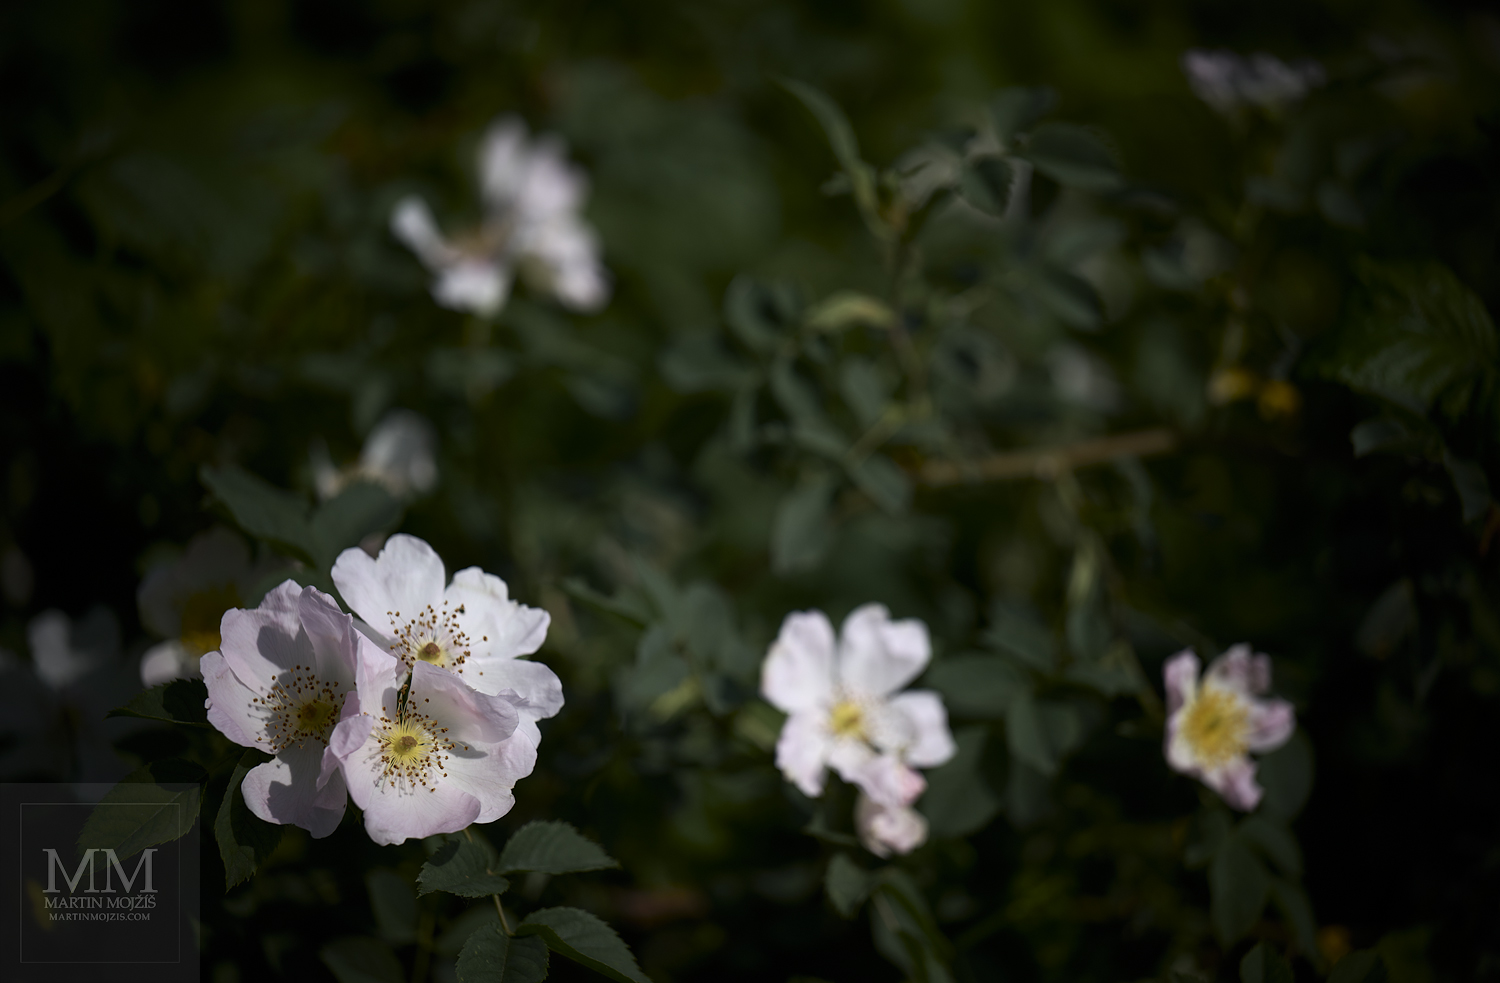 Kvetoucí šípkový keř. Umělecká fotografie s názvem KOUZLO ŠÍPKOVÝCH RŮŽÍ. Fotograf Martin Mojžíš.